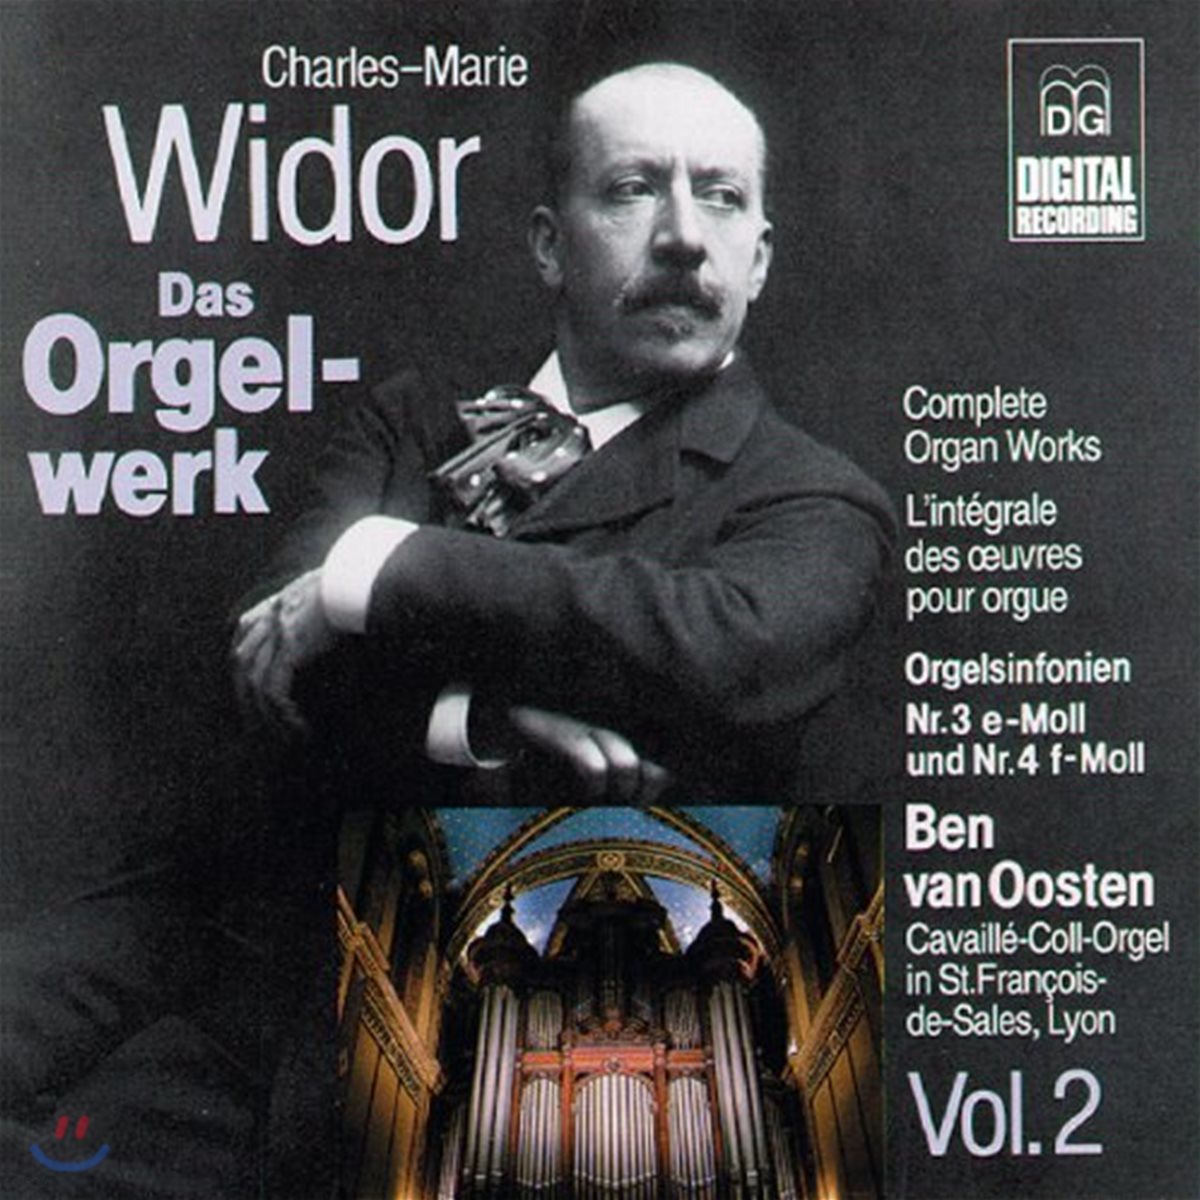 Ben van Oosten 비도르: 오르간 작품 전집 2 (Widor: Complete Organ Works Vol.2)